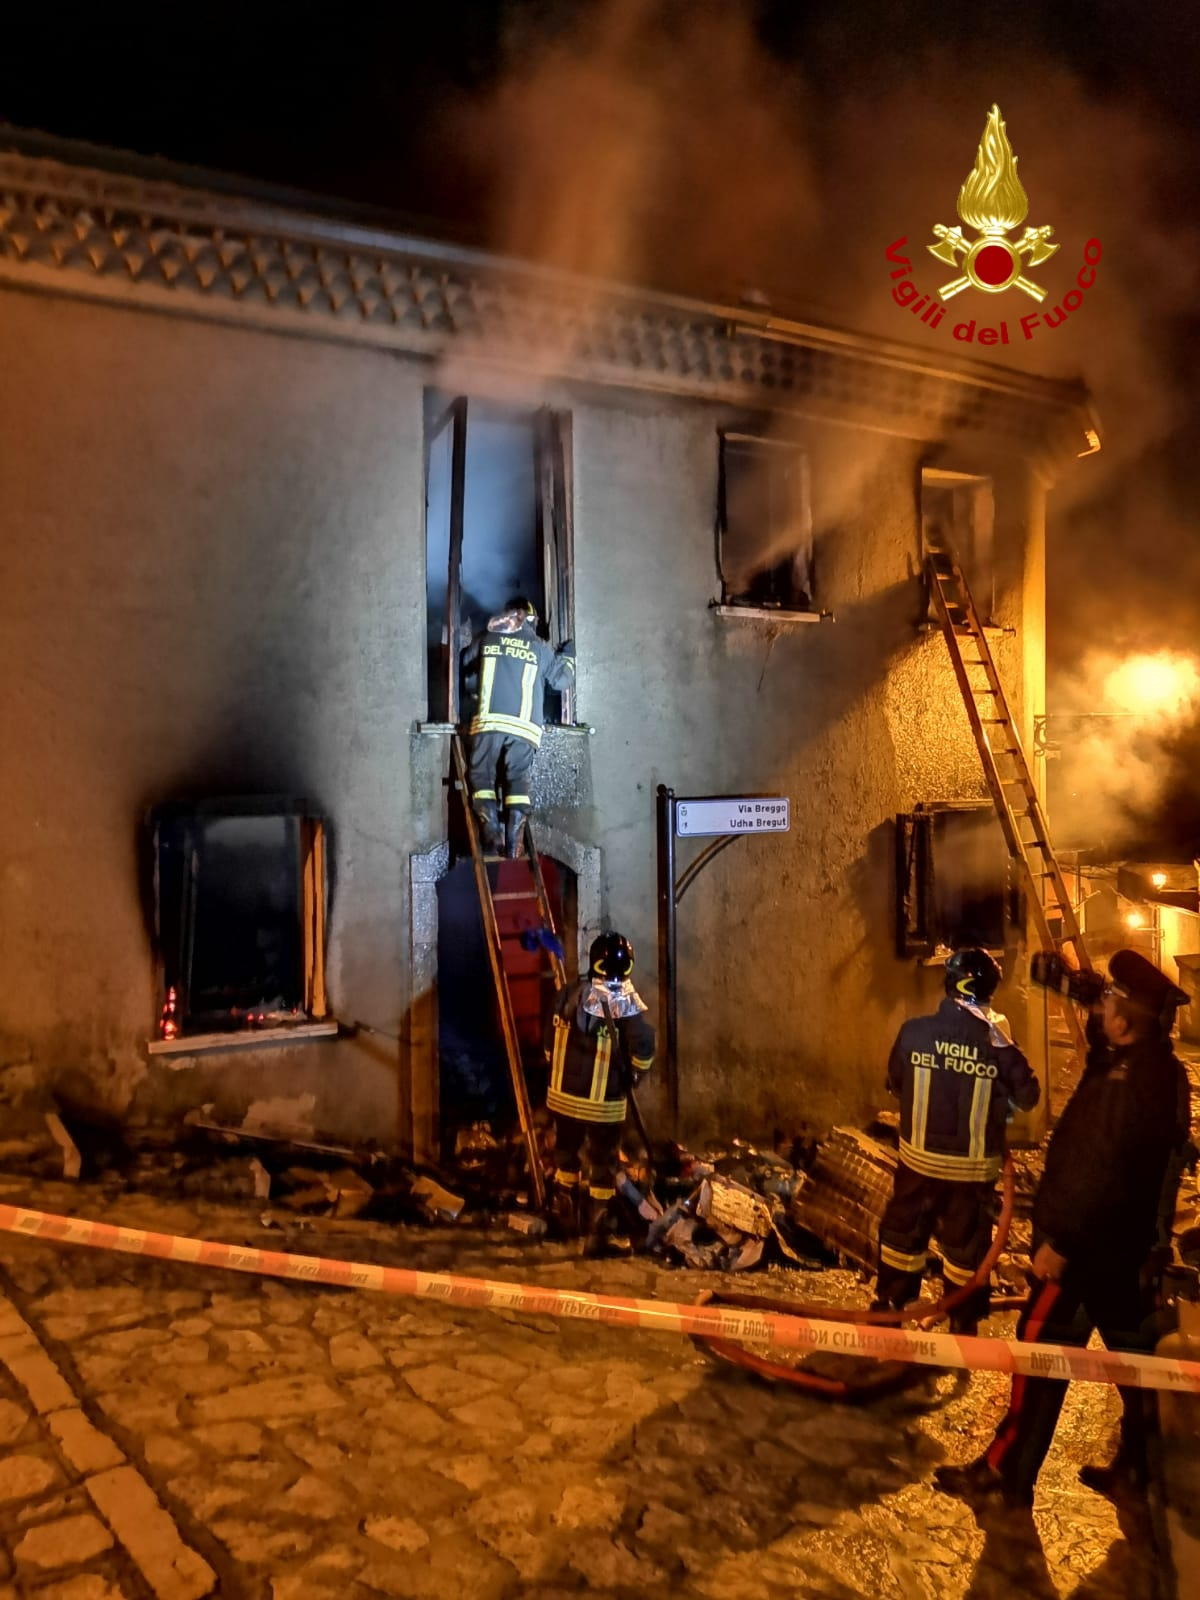 Greci| Palazzina in fiamme, anziana si rifugia sul balcone: la salvano i vigili del fuoco